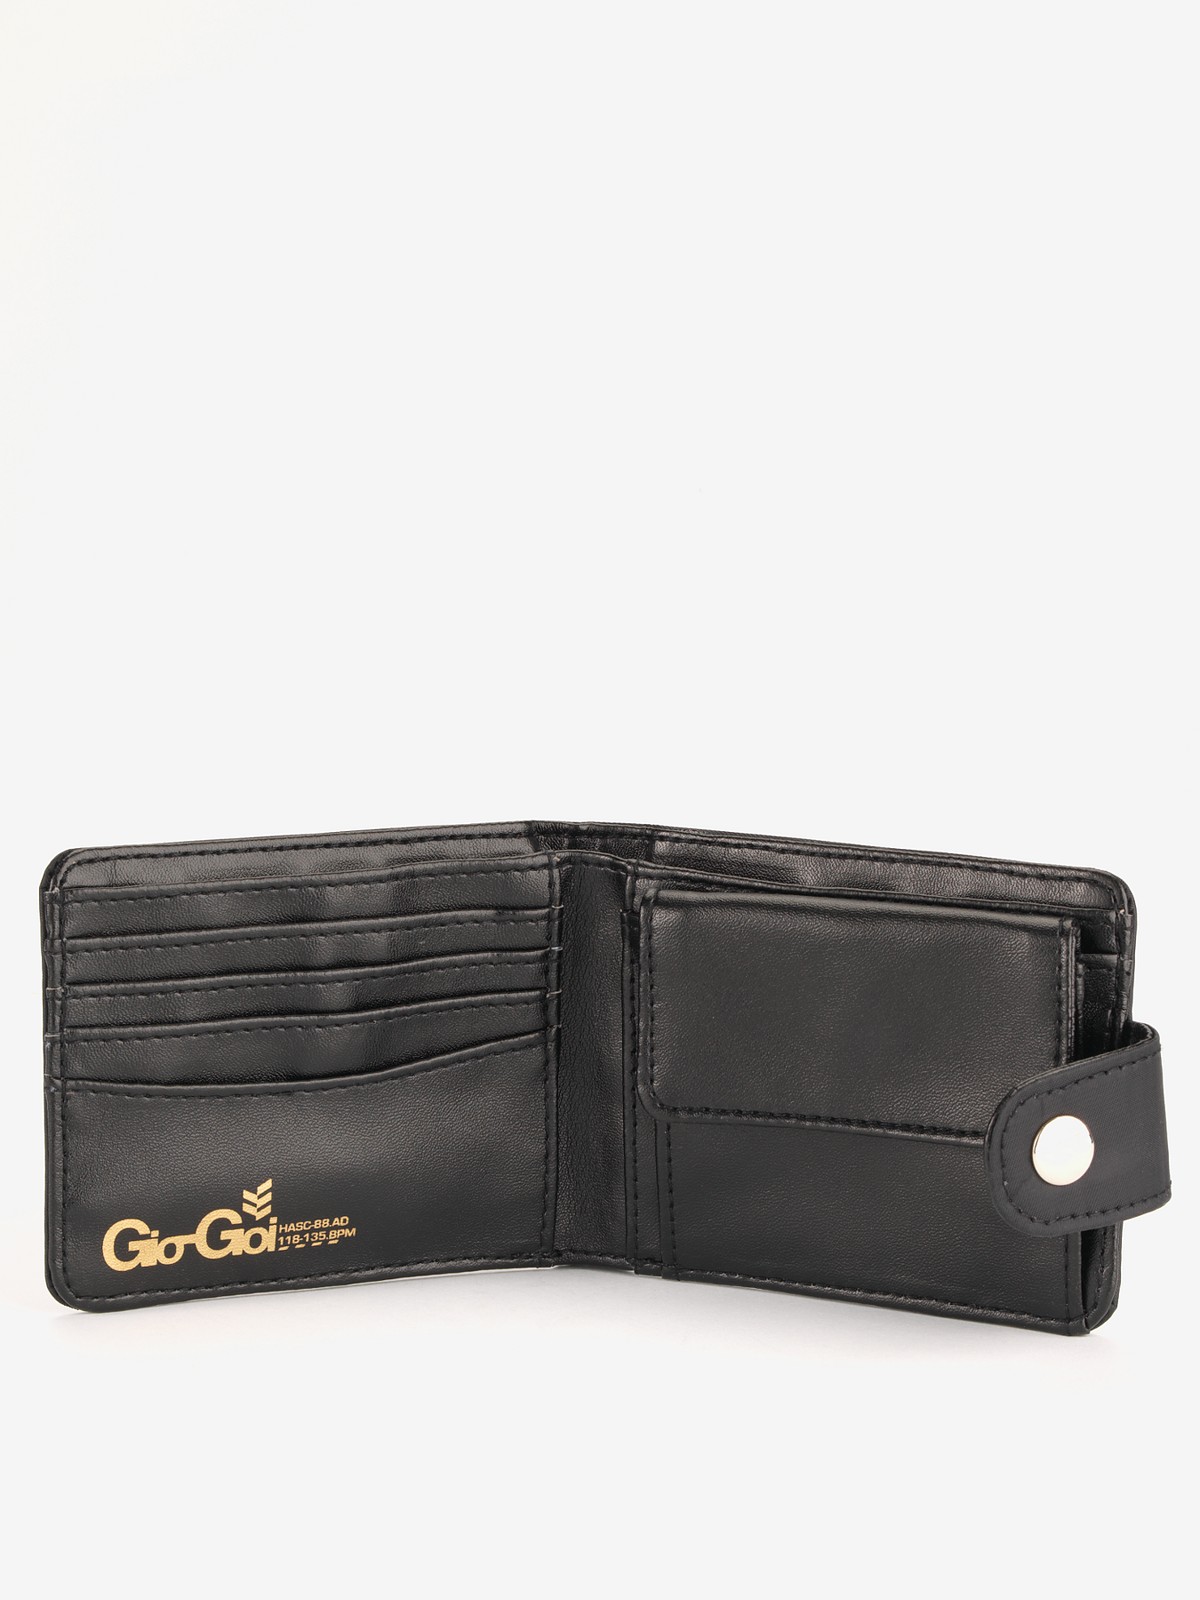 Gio Goi Giogoi Mens Wallet and Belt Set in Black for Men | Lyst